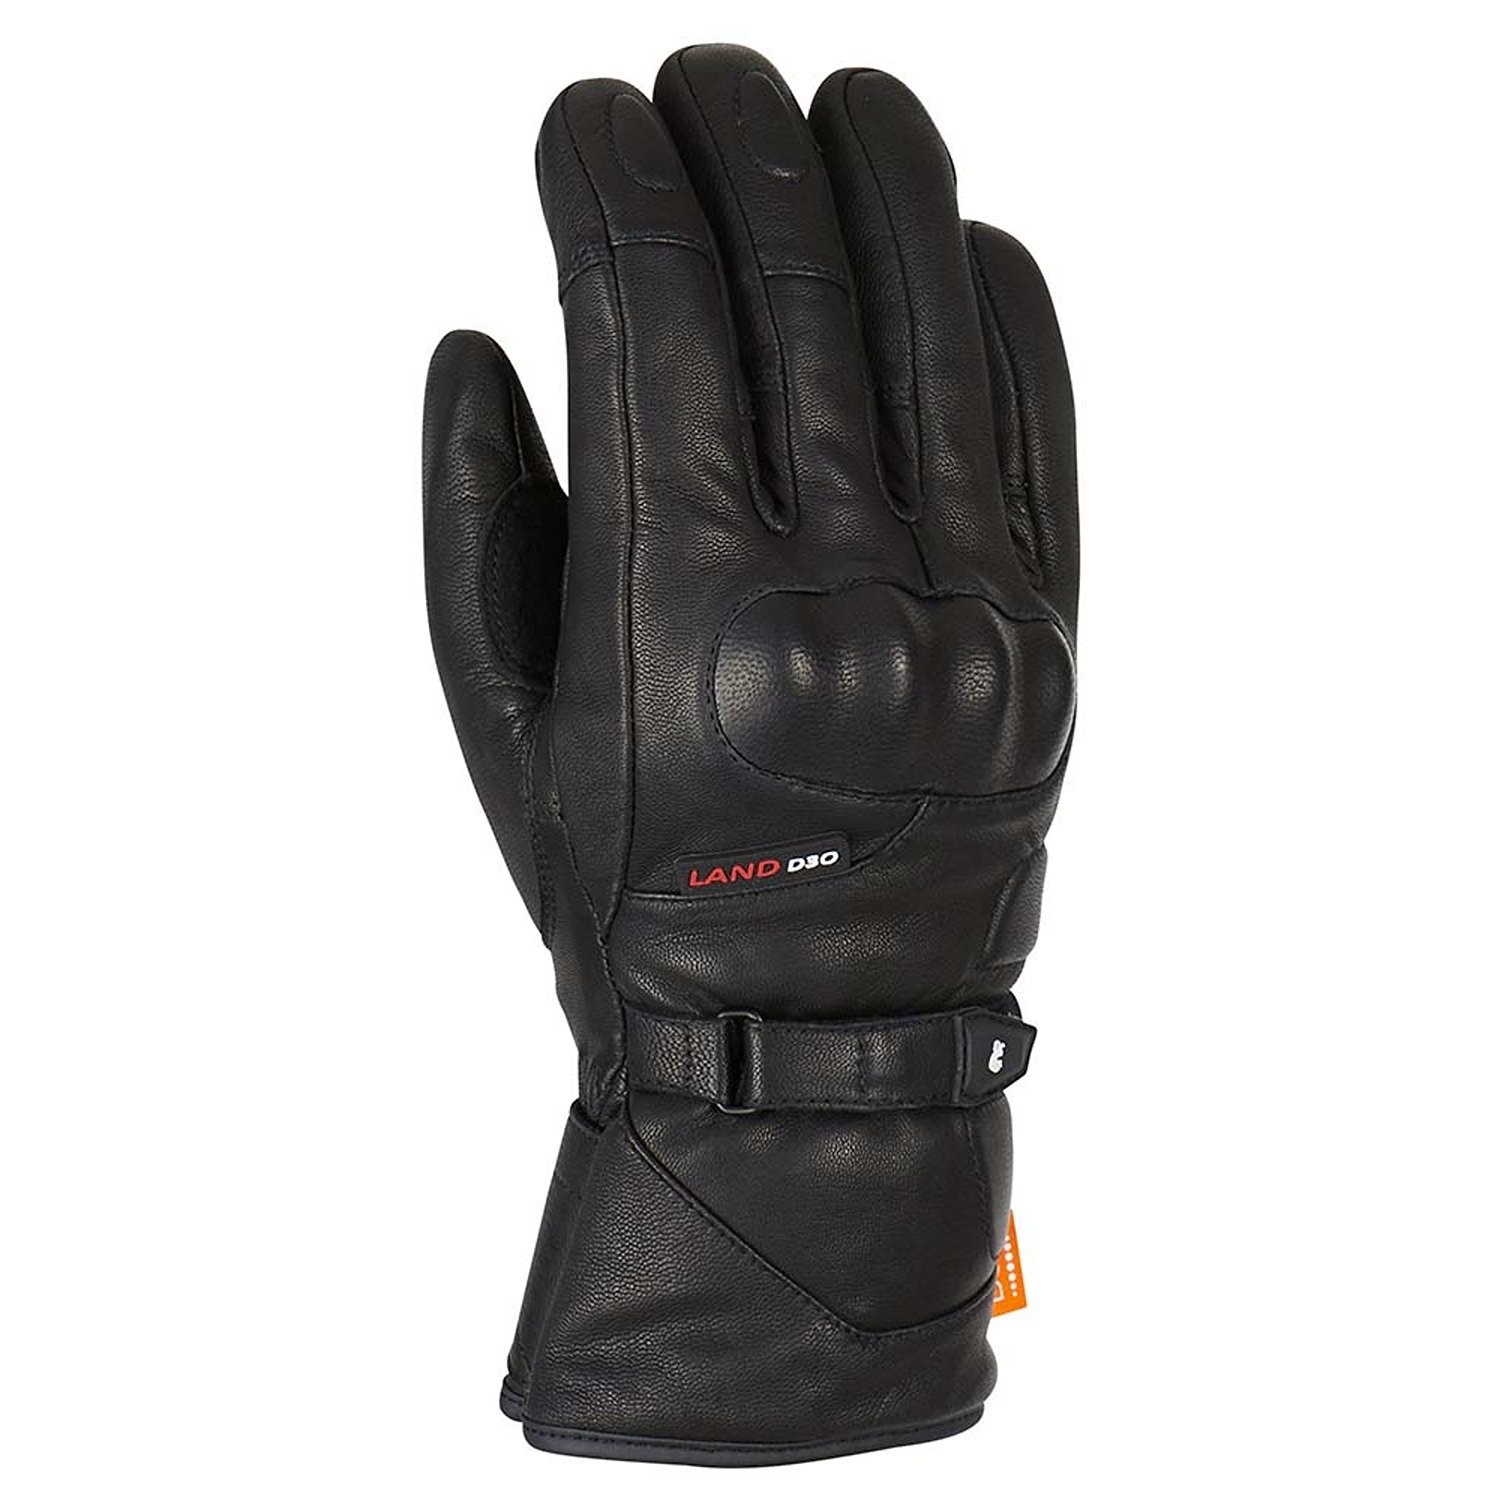 Image of EU Furygan Land DK D30 Gloves Black Taille M